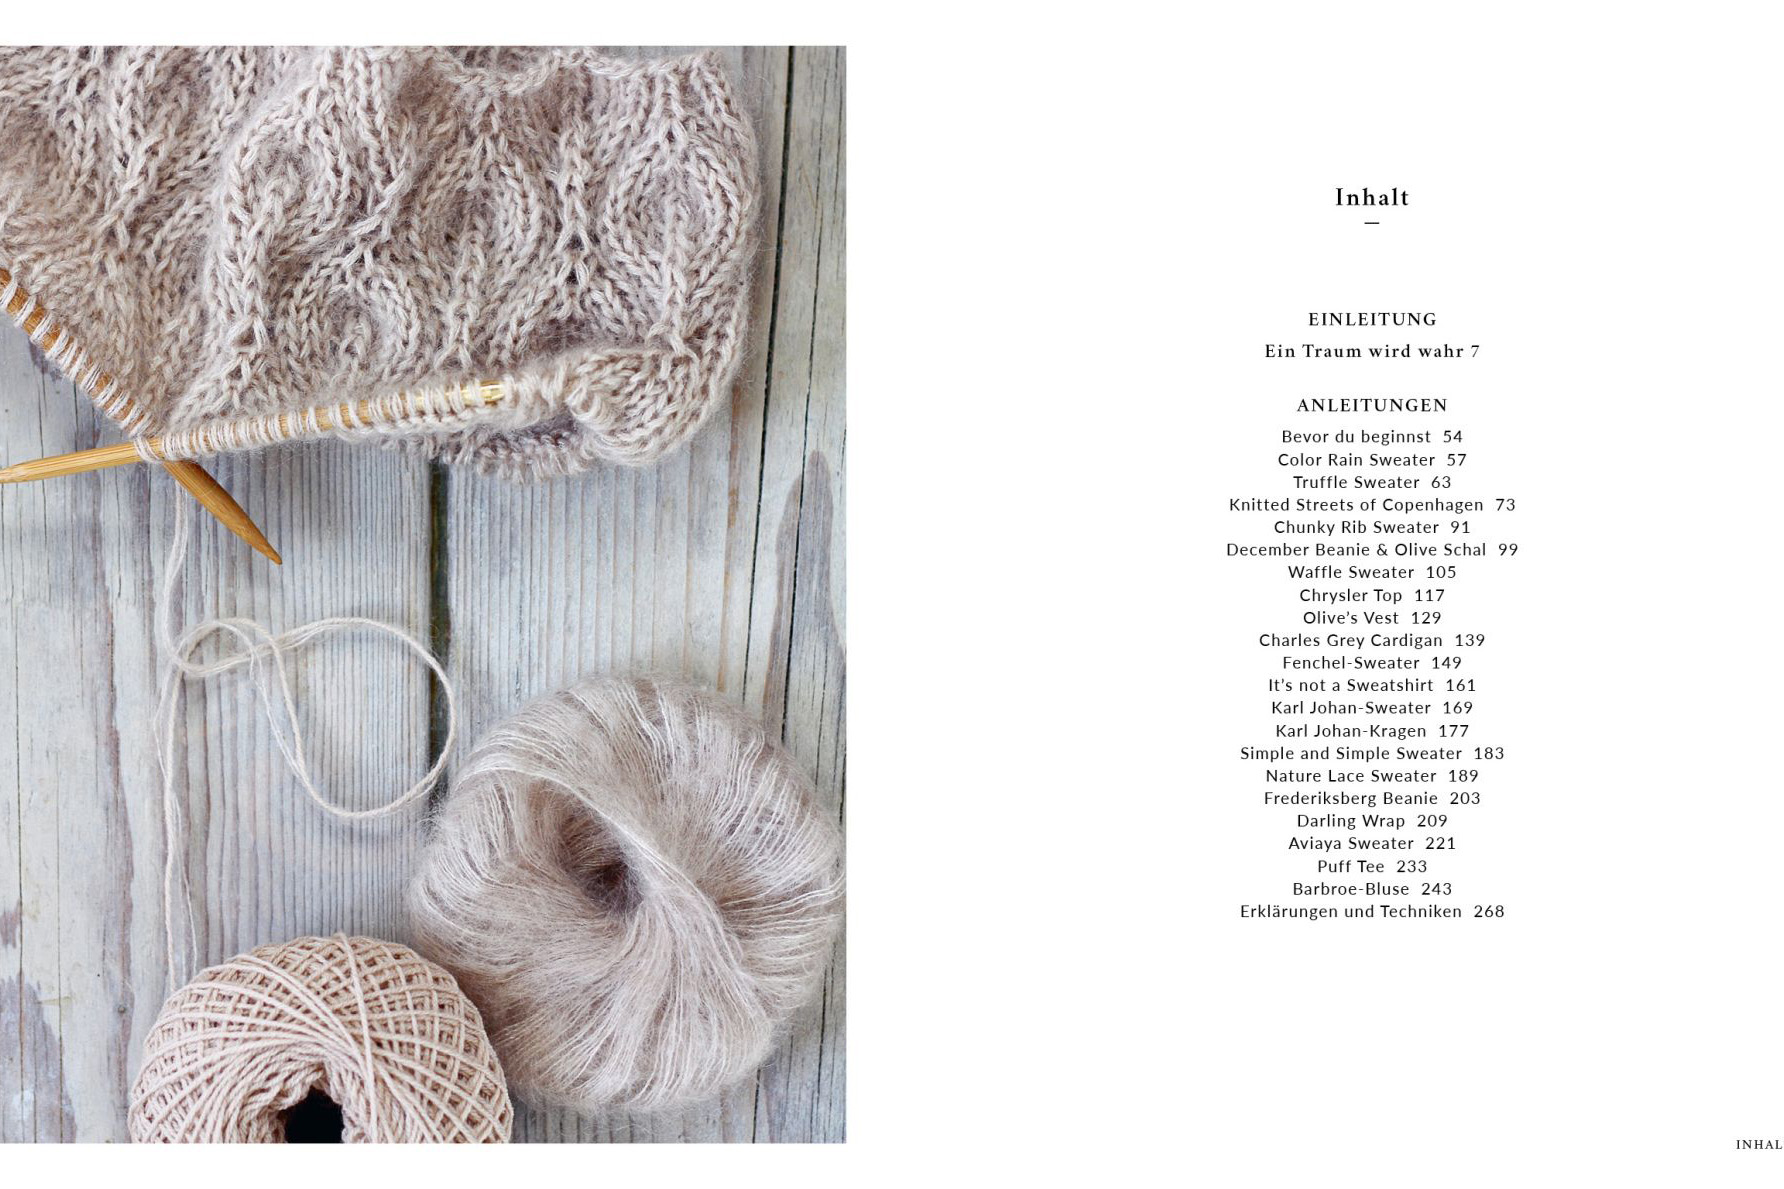 Knitting for Olive - Stricken im Skandi-Chic